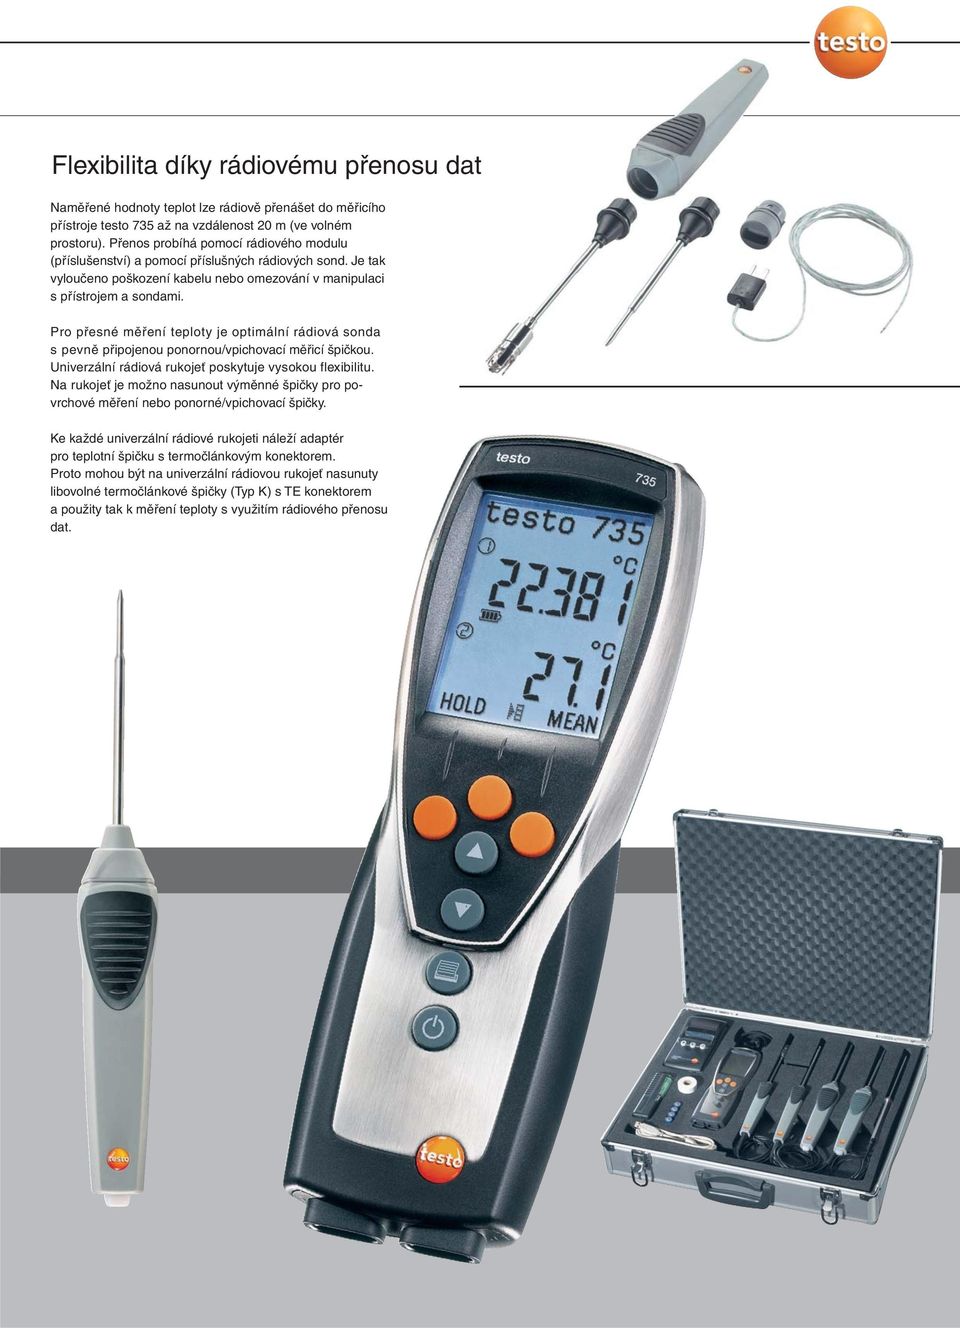 Pro přesné měření teploty je optimální rádiová sonda s pevně připojenou ponornou/vpichovací měřicí špičkou. Univerzální rádiová rukojeť poskytuje vysokou flexibilitu.